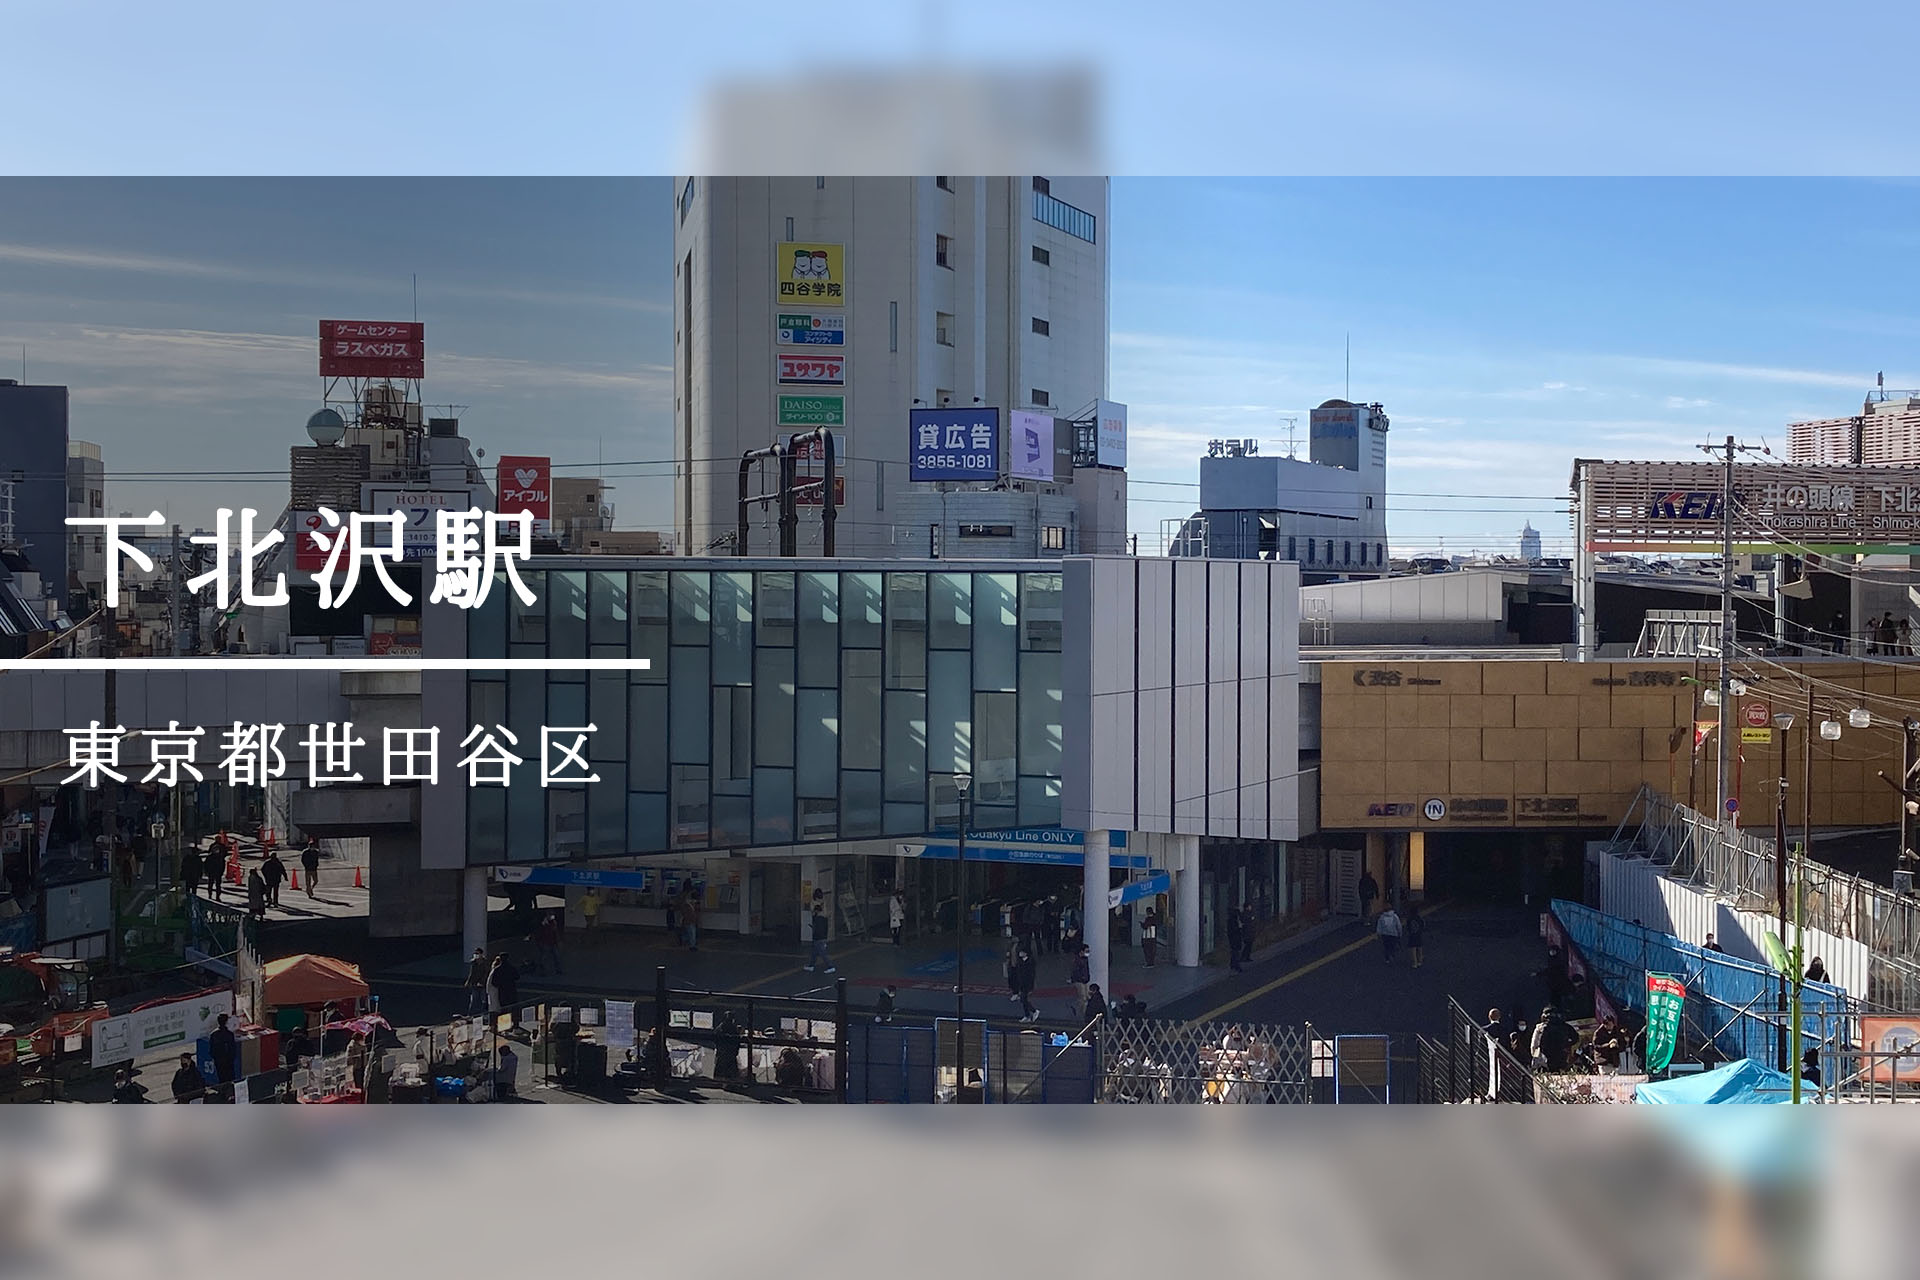 下北沢駅周辺 ―再開発で生まれ変わる文化の発信地―